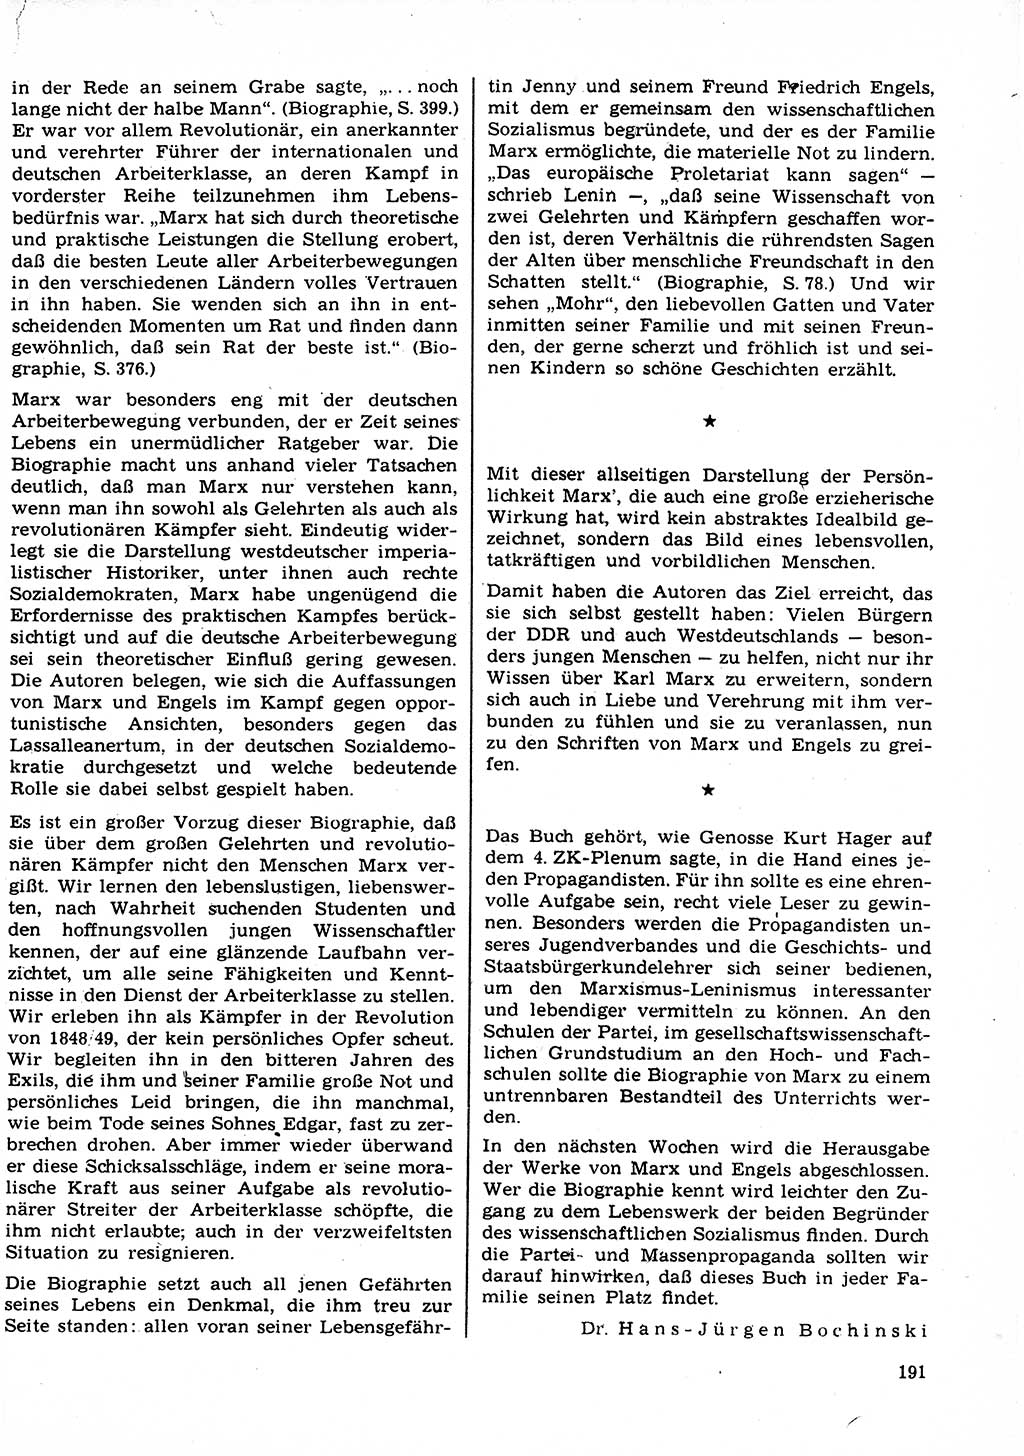 Neuer Weg (NW), Organ des Zentralkomitees (ZK) der SED (Sozialistische Einheitspartei Deutschlands) für Fragen des Parteilebens, 23. Jahrgang [Deutsche Demokratische Republik (DDR)] 1968, Seite 191 (NW ZK SED DDR 1968, S. 191)